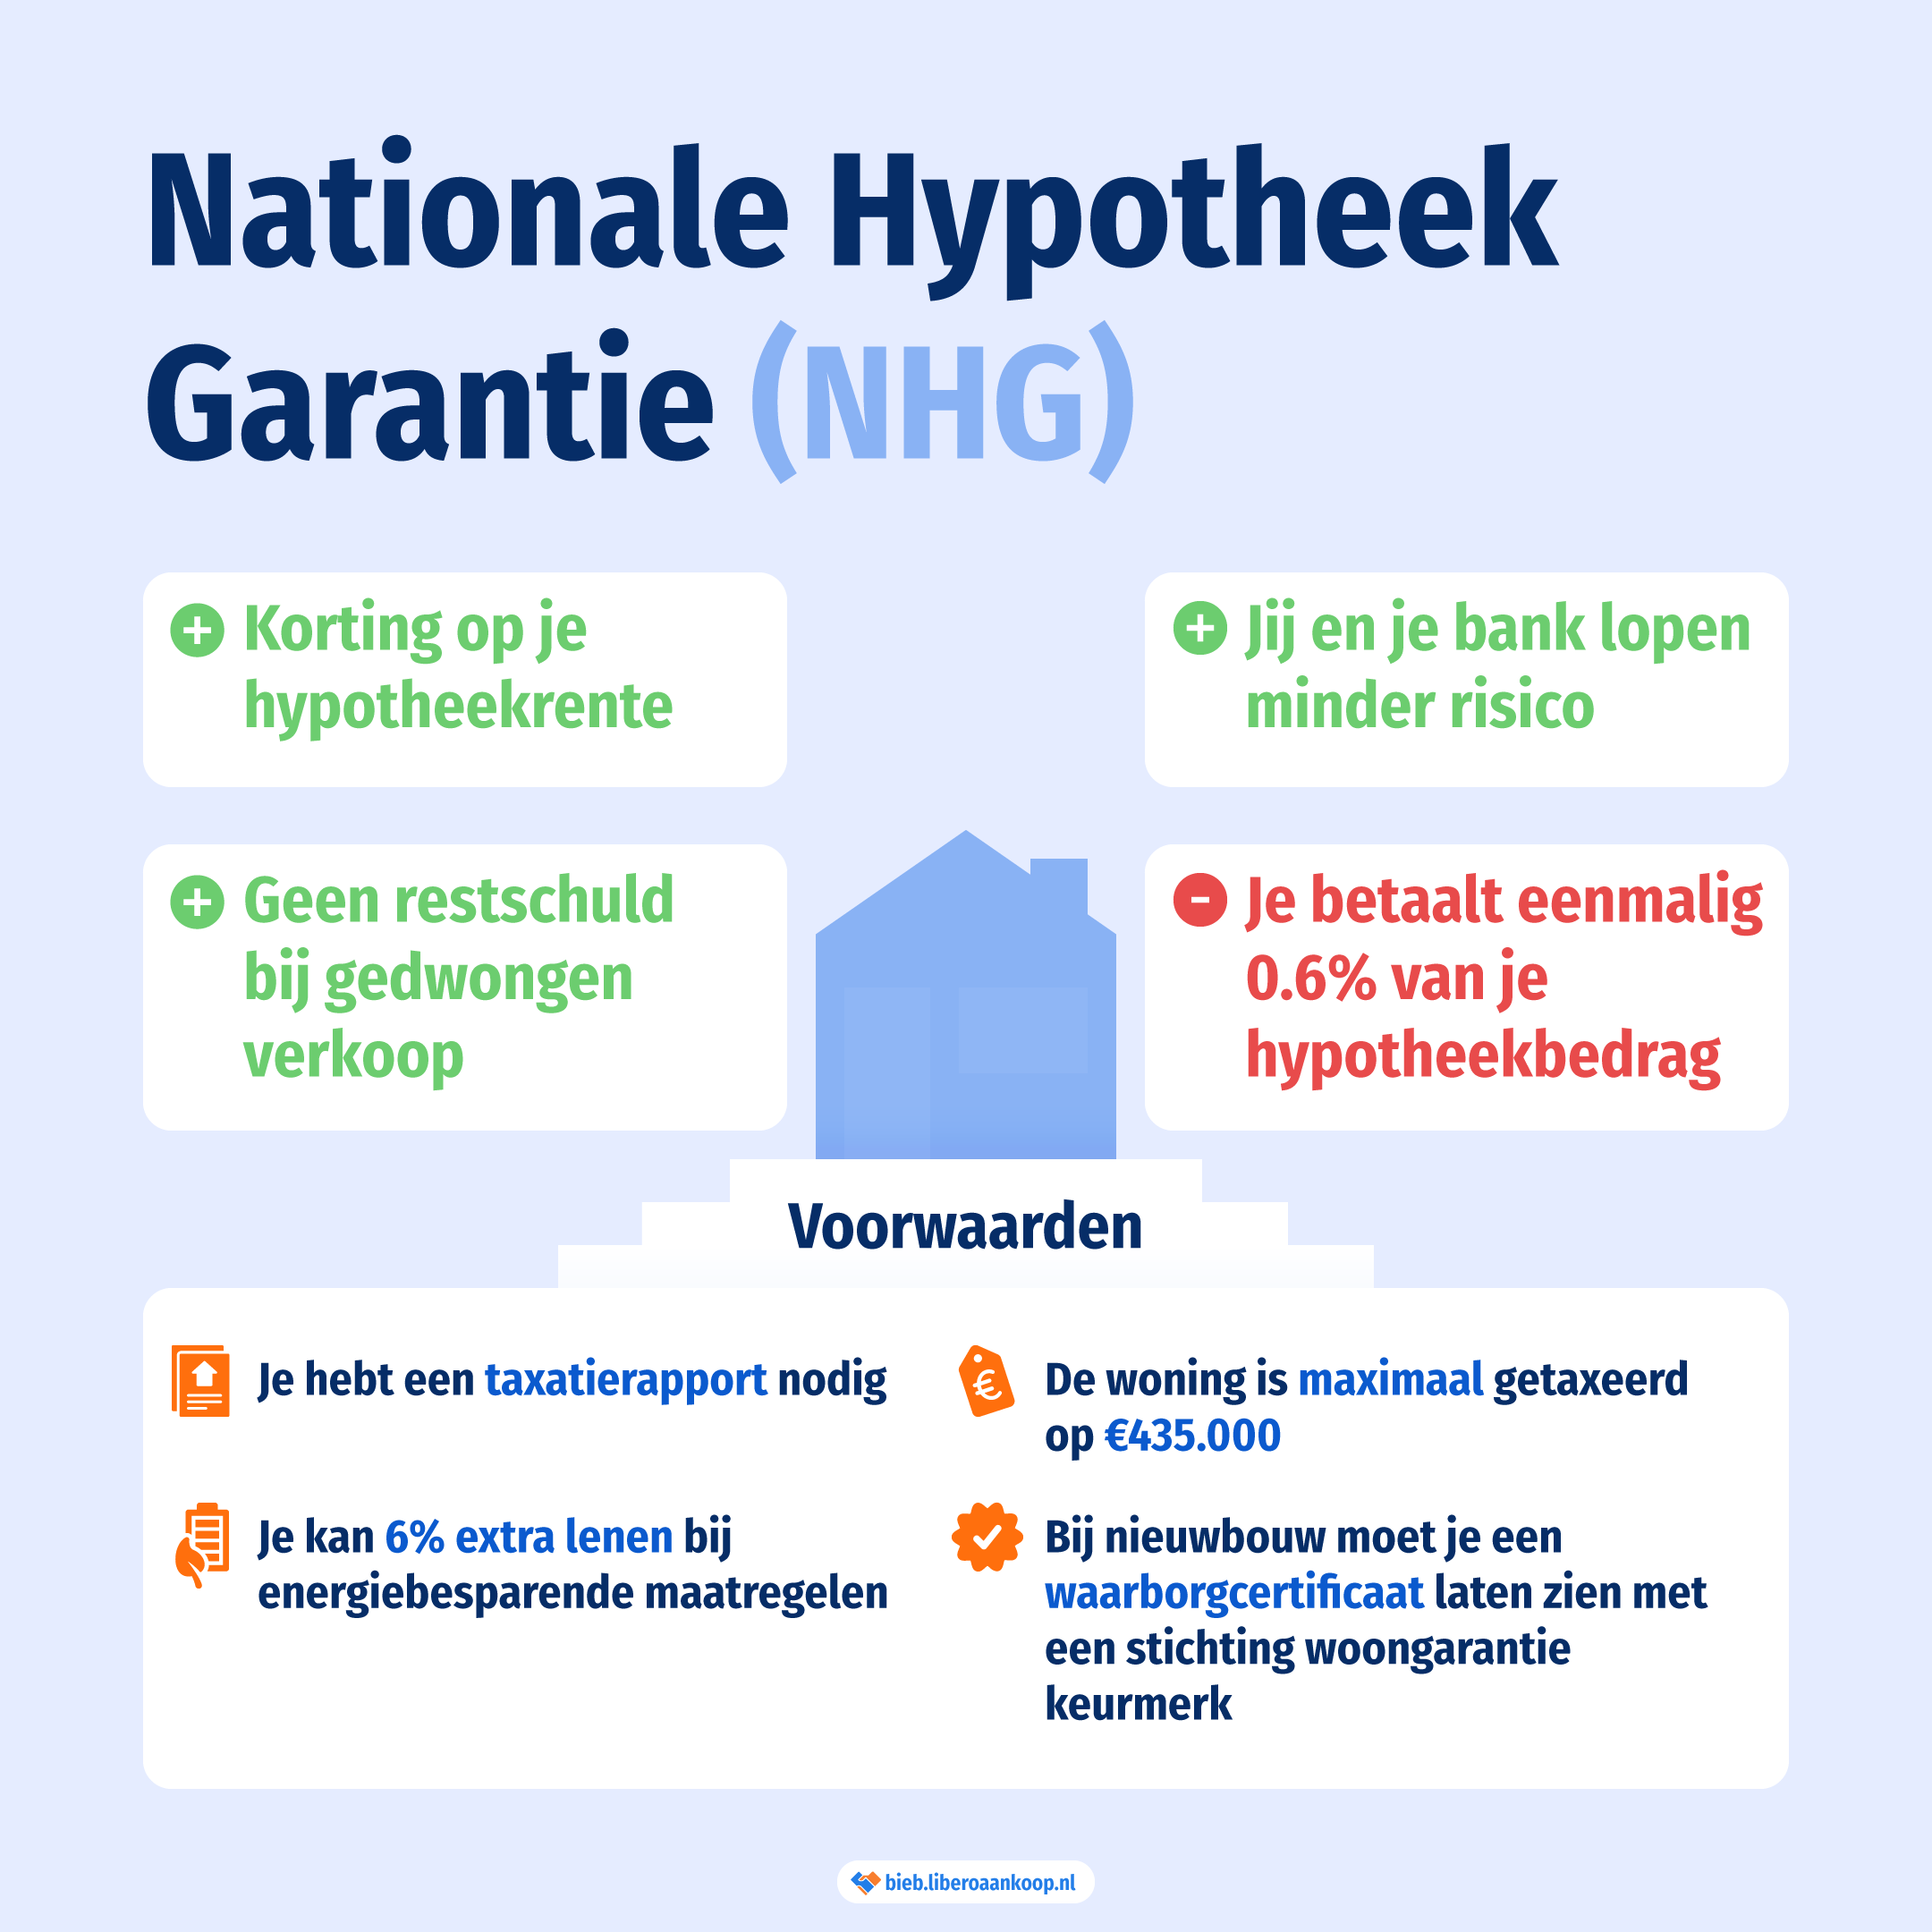 De voordelen en nadelen van de Nationale Hypotheek Garantie inclusief voorwaarden